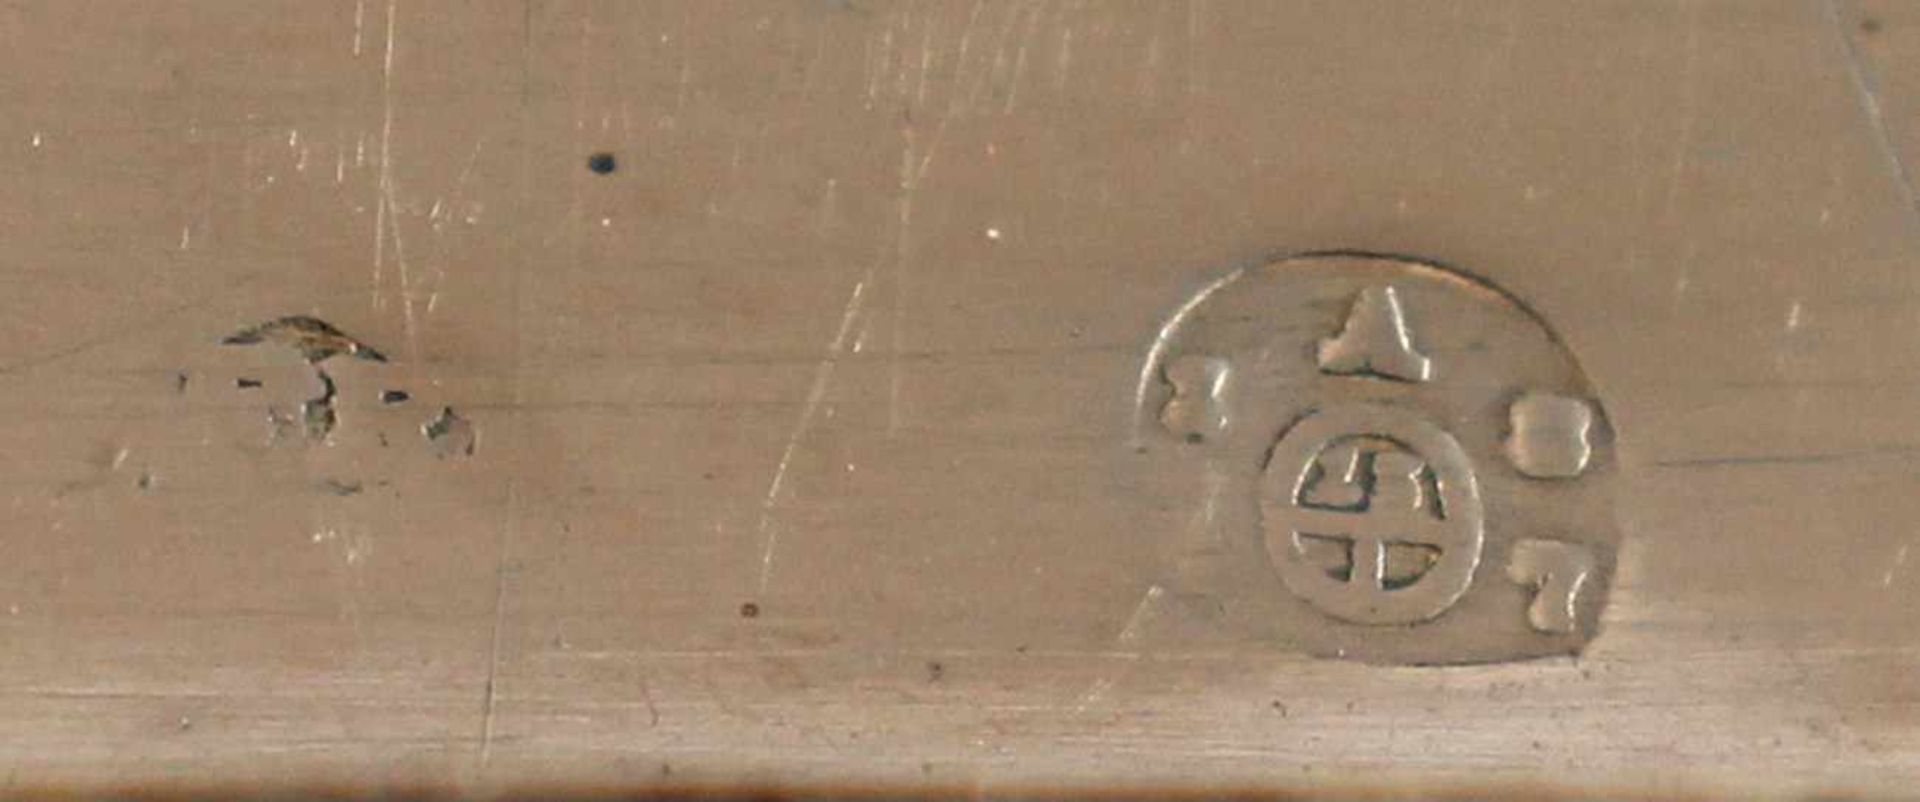 WIENER ZUCKERDOSE, 13lötig, auf dem scharnierten Deckel graviertes Wappen derer von Behr Stamm - Image 3 of 3